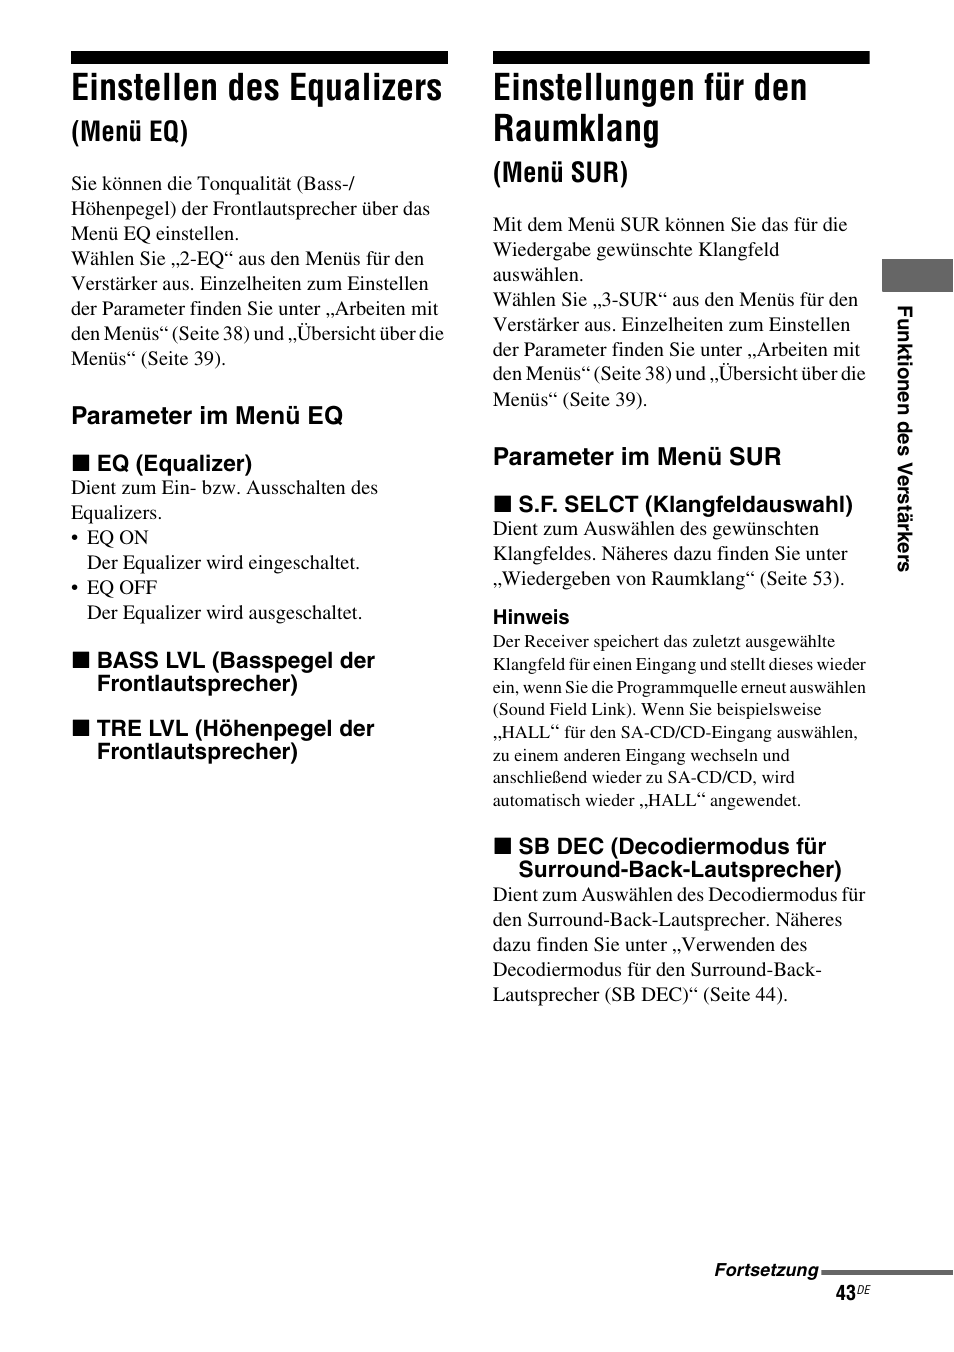 Einstellen des equalizers (menü eq), Einstellungen für den raumklang (menü sur), Menü sur) | Einstellen des equalizers, Einstellungen für den raumklang, Menü eq) | Sony STR-DG710 Benutzerhandbuch | Seite 43 / 244